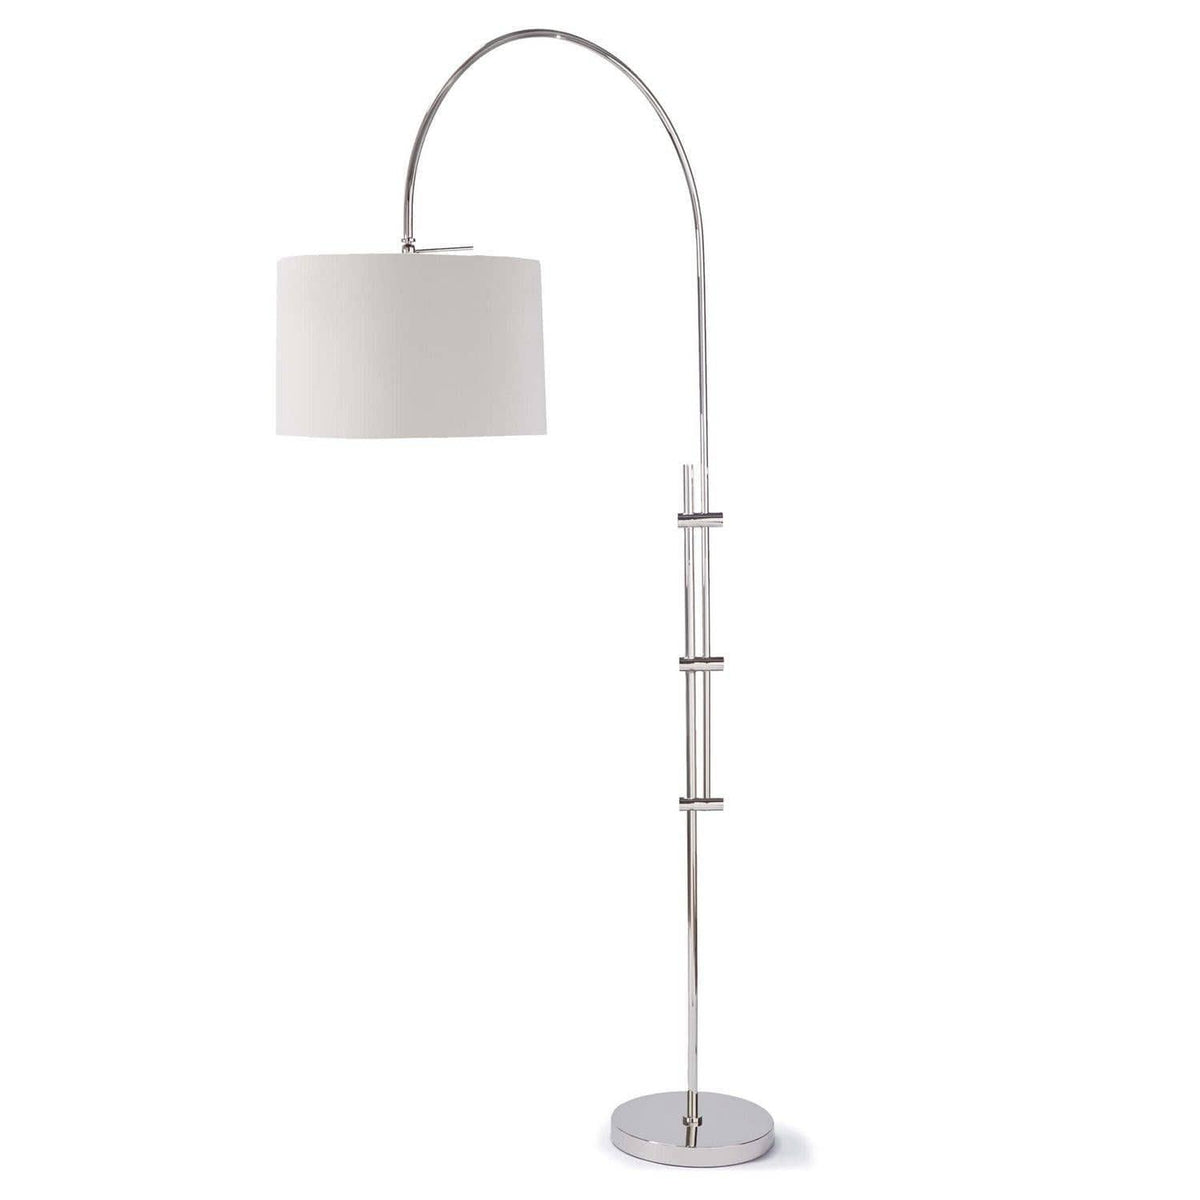 Regina Andrew - Arc Floor Lamp - 14-1004PN | Montreal Lighting & Hardware